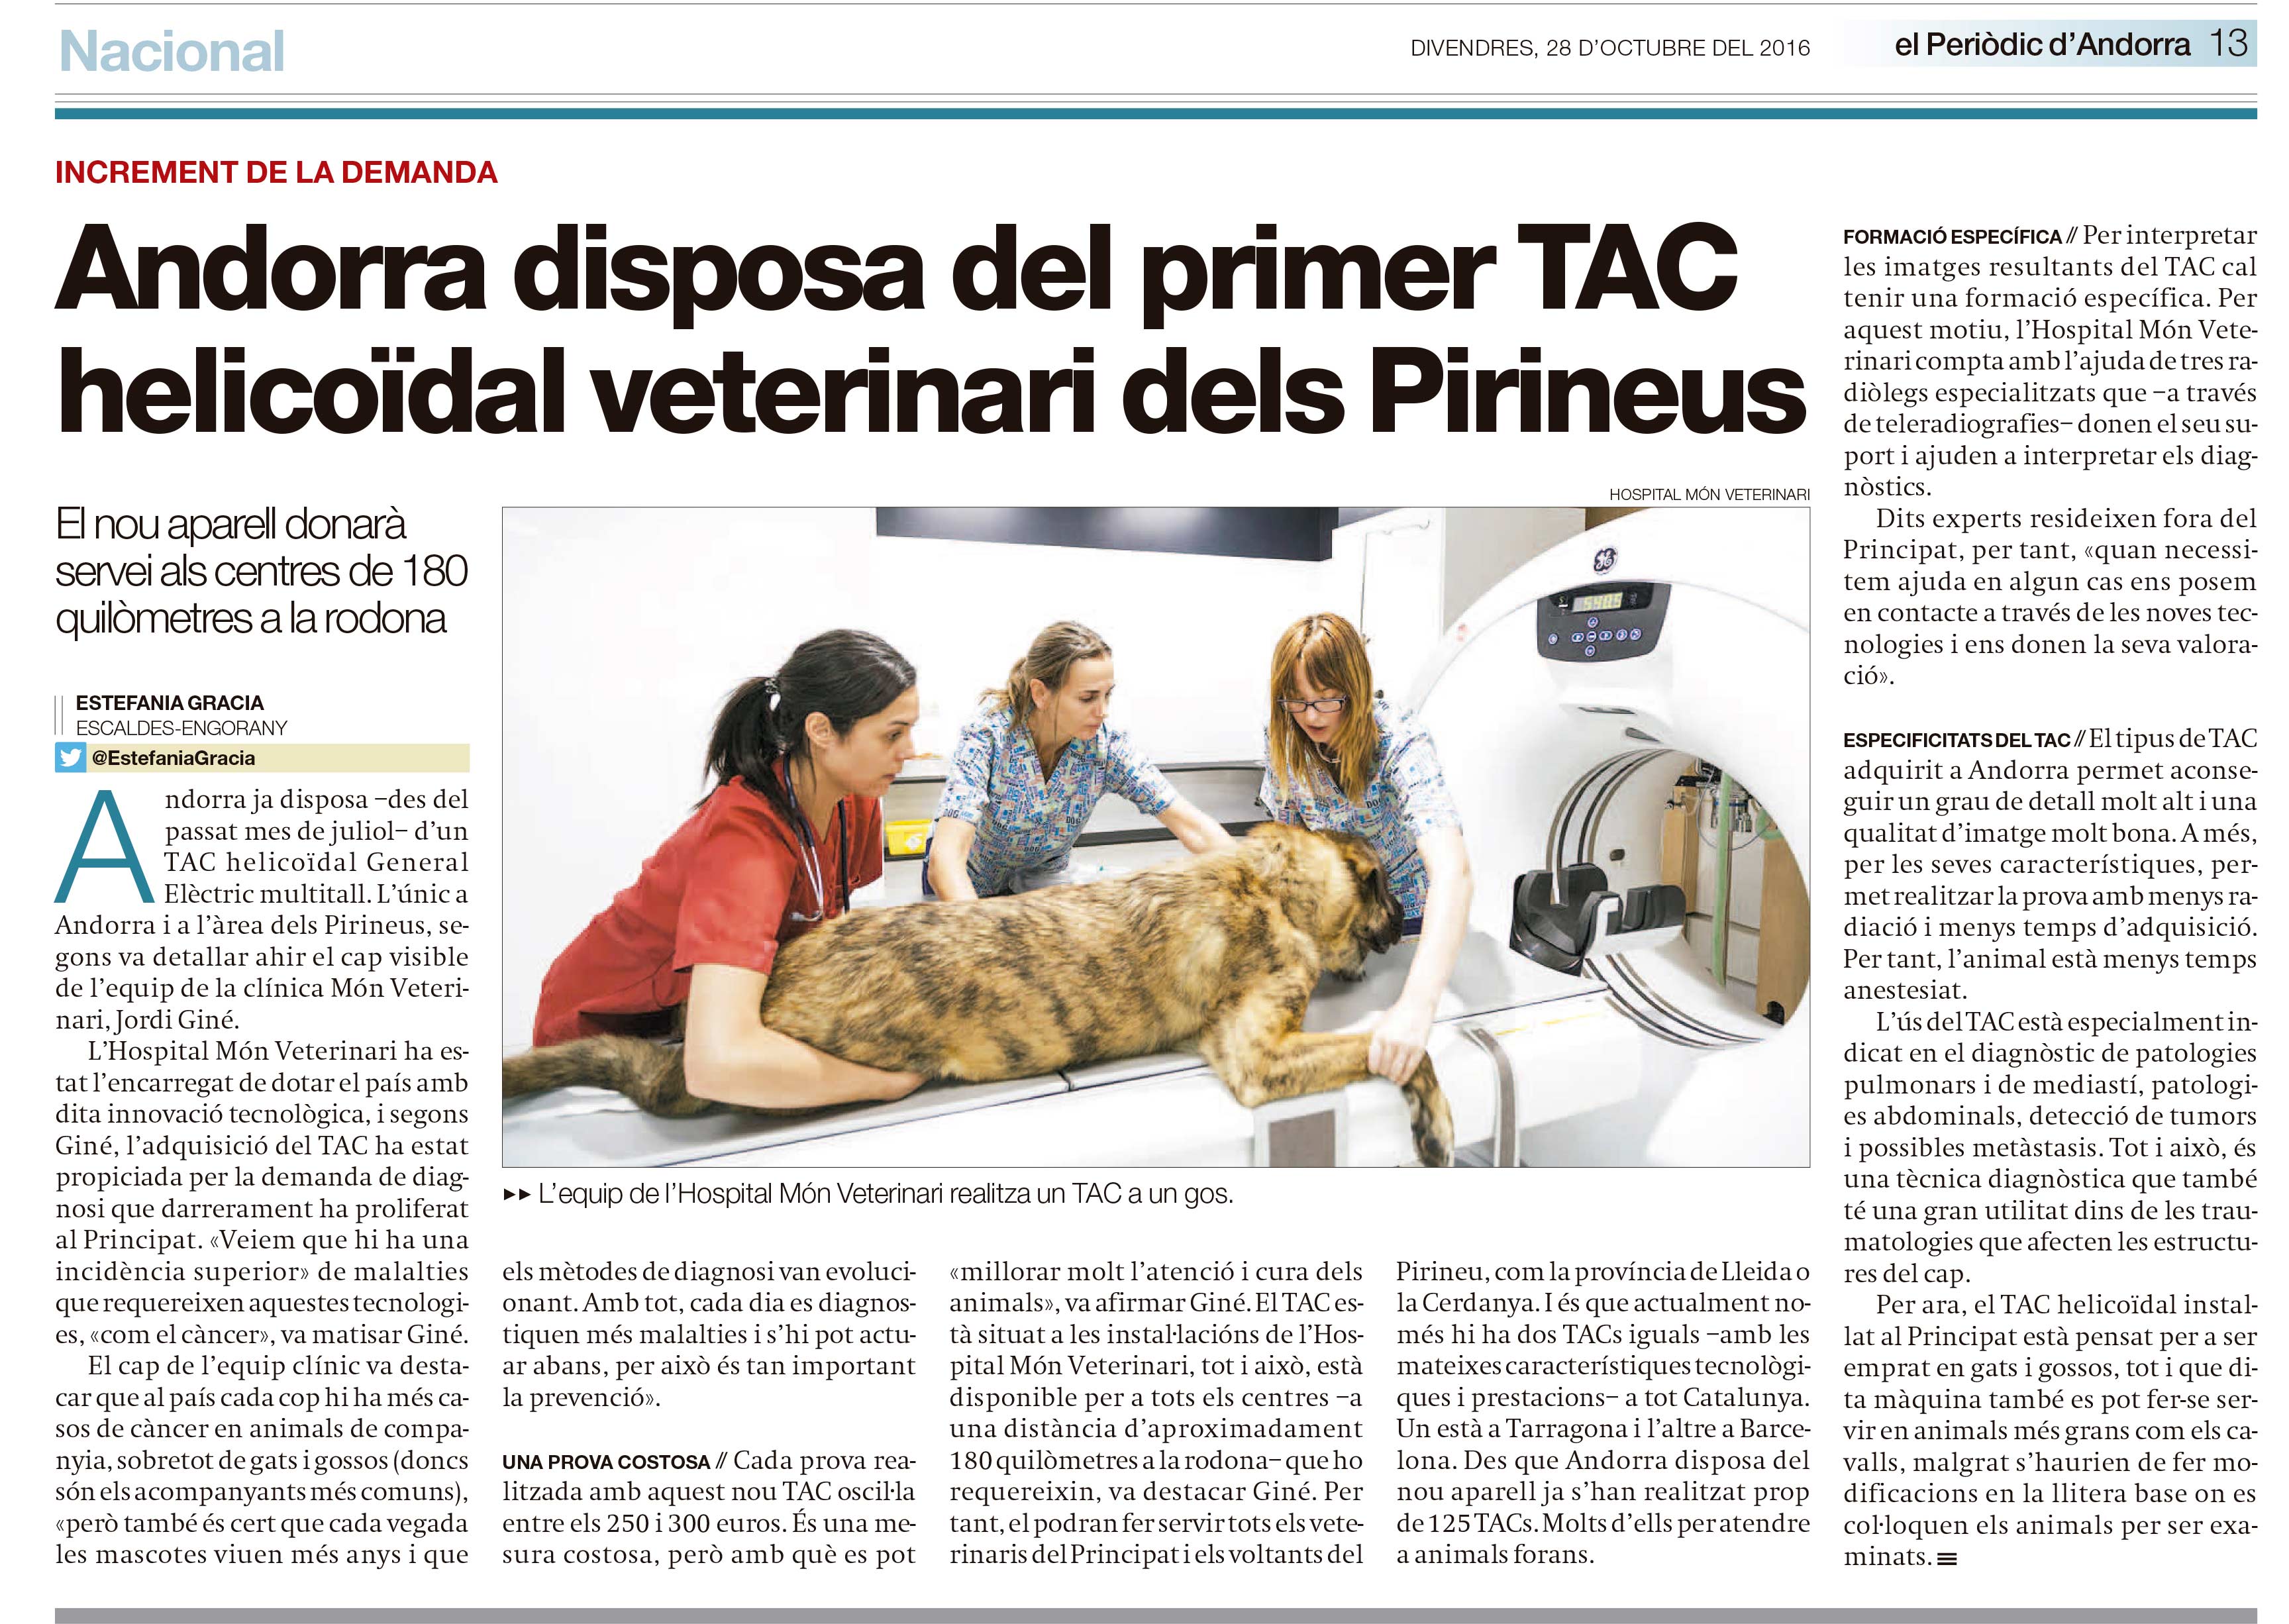 Andorra disposa del primer TAC helicodal veterinari dels Pirineus